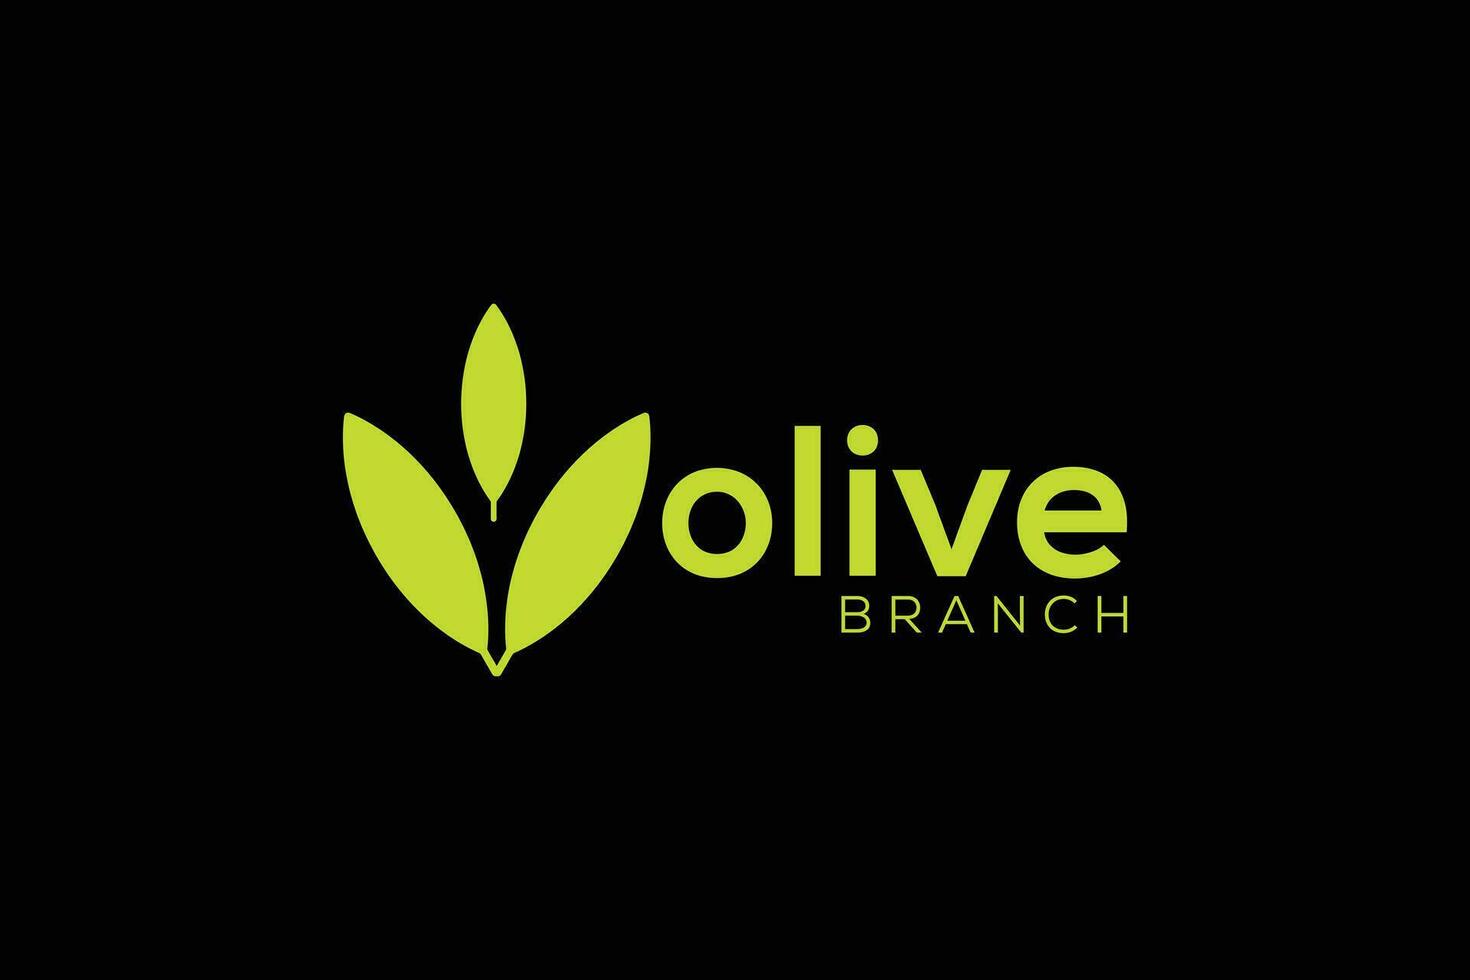 minimo e professionale oliva ramo logo design vettore modello